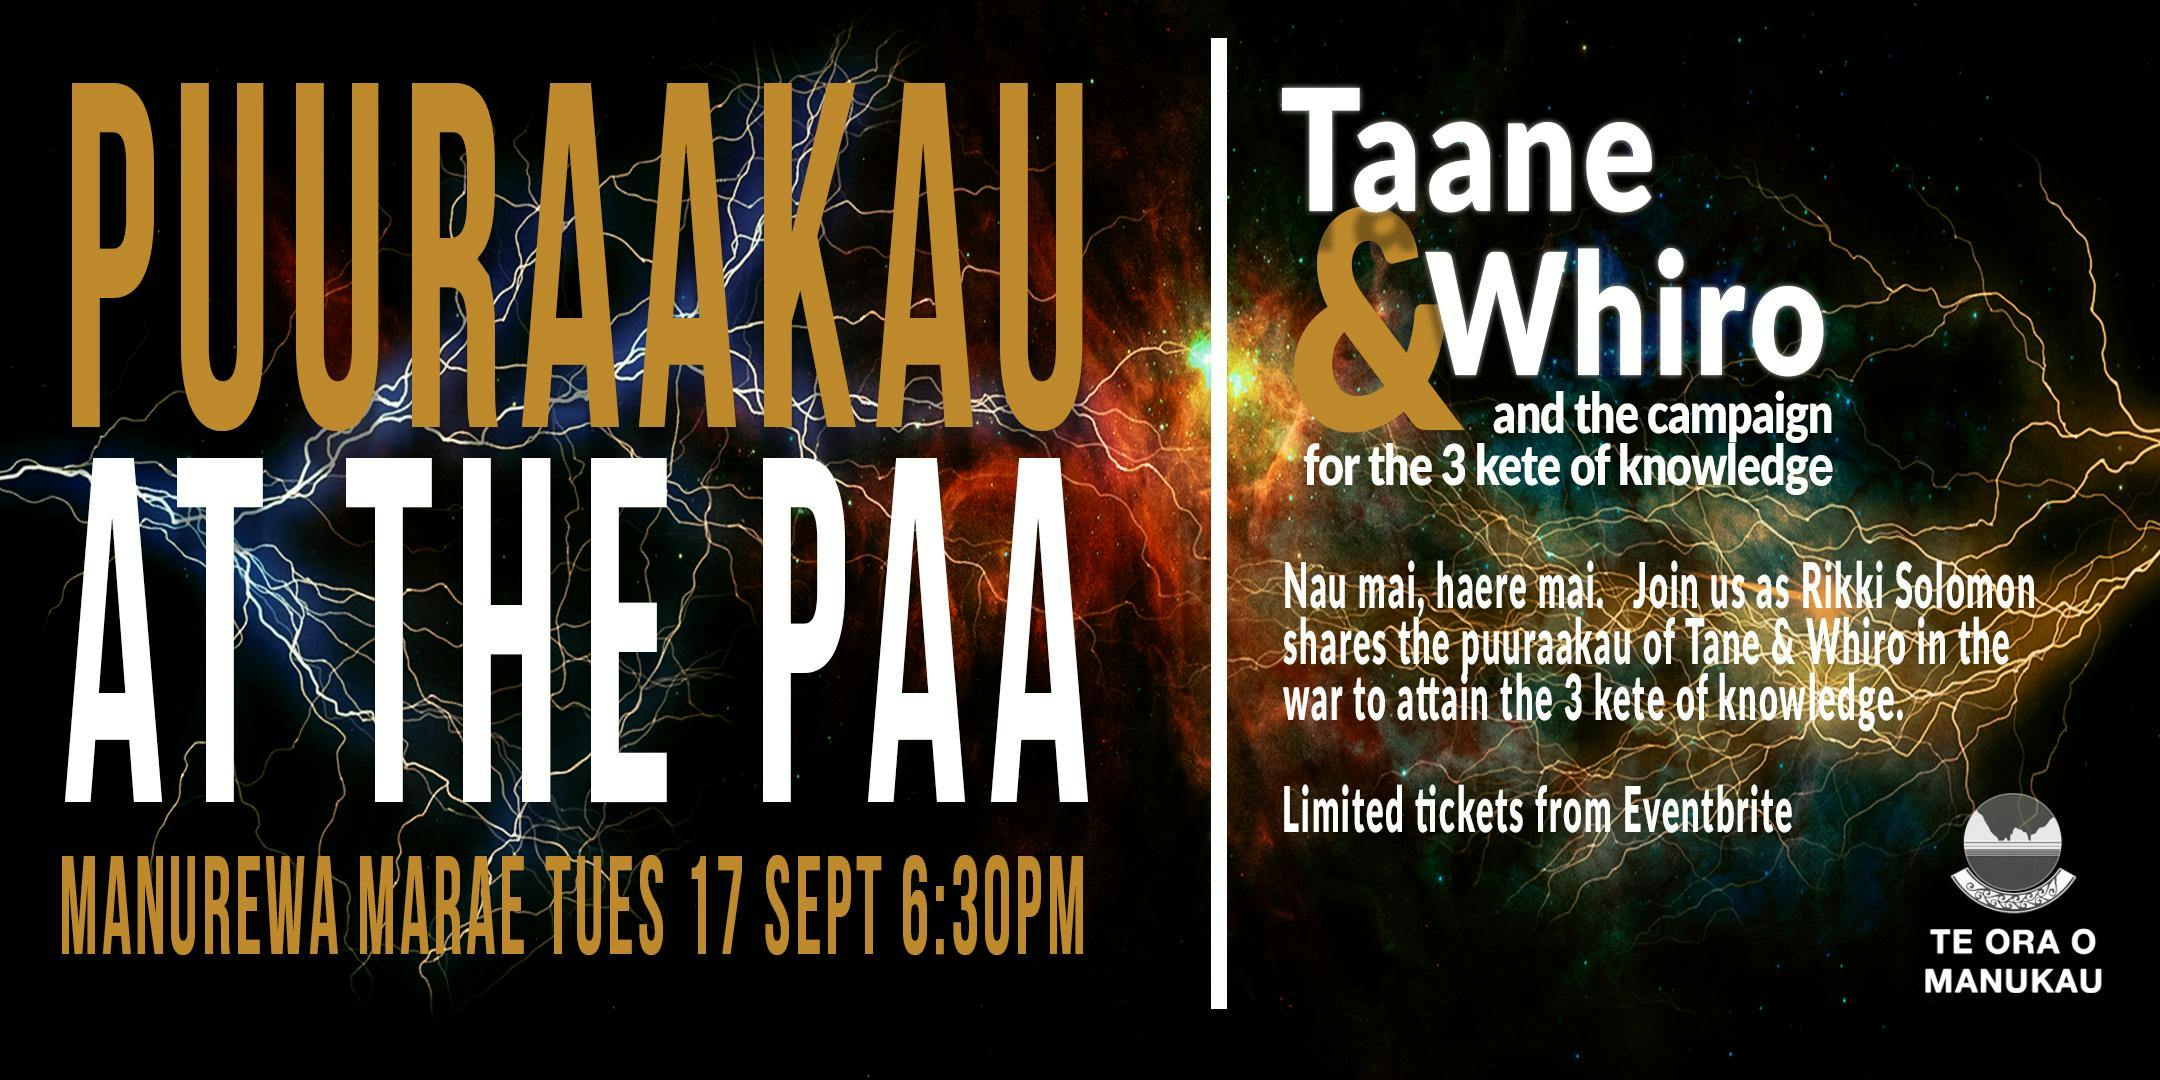 Puurakau at the Paa : Taane & Whiro